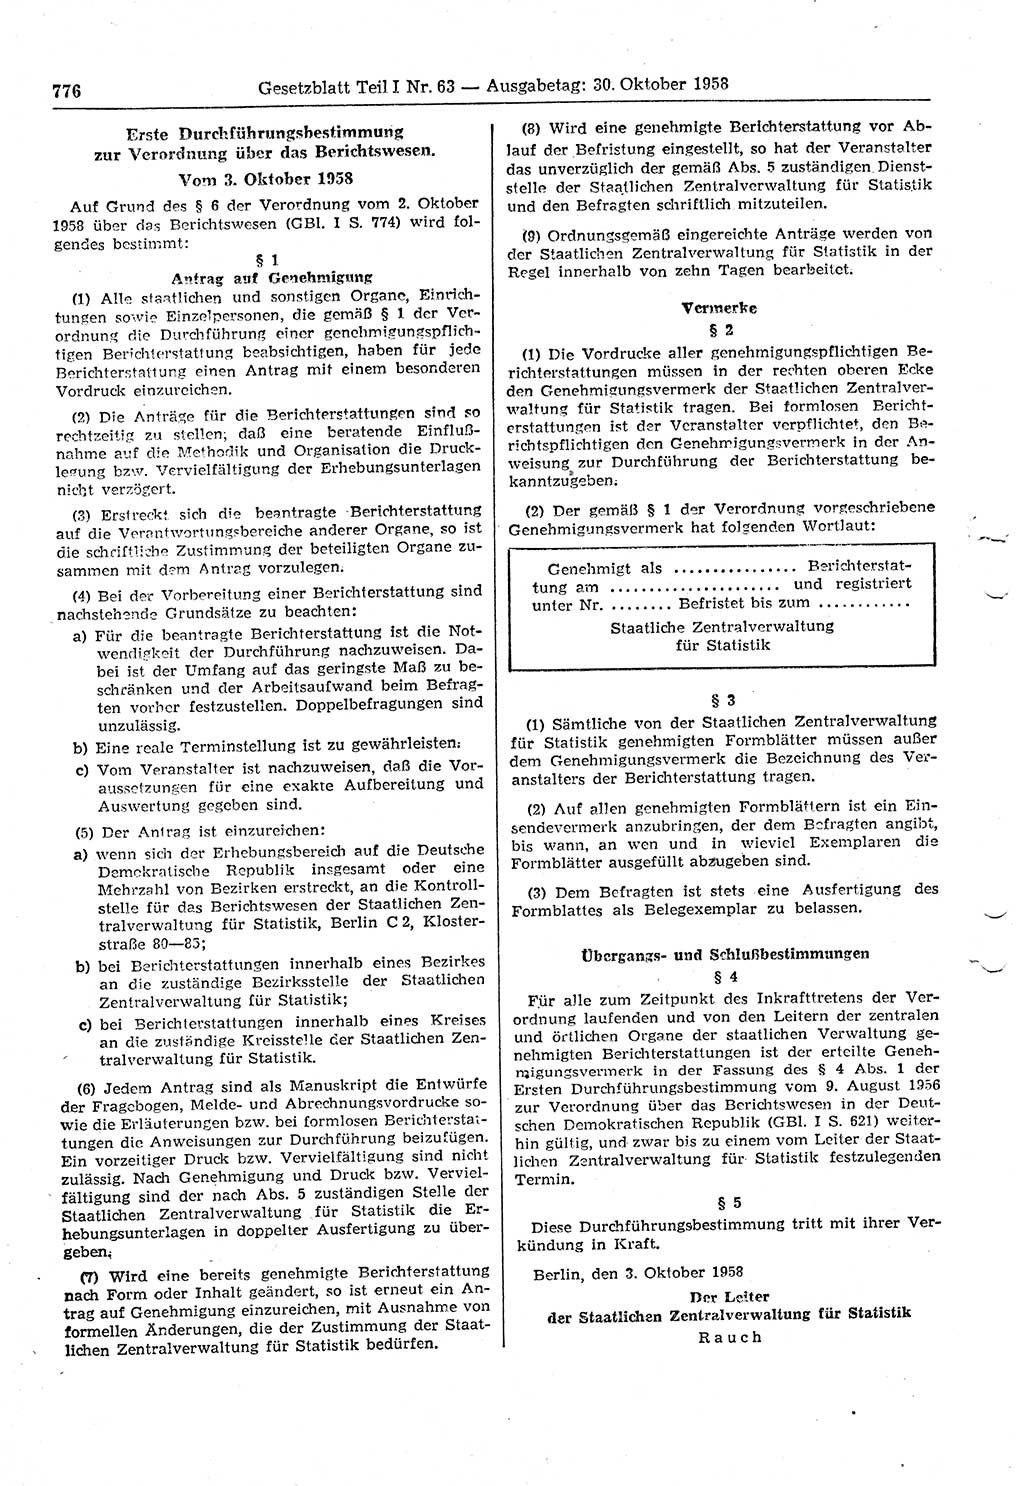 Gesetzblatt (GBl.) der Deutschen Demokratischen Republik (DDR) Teil Ⅰ 1958, Seite 776 (GBl. DDR Ⅰ 1958, S. 776)